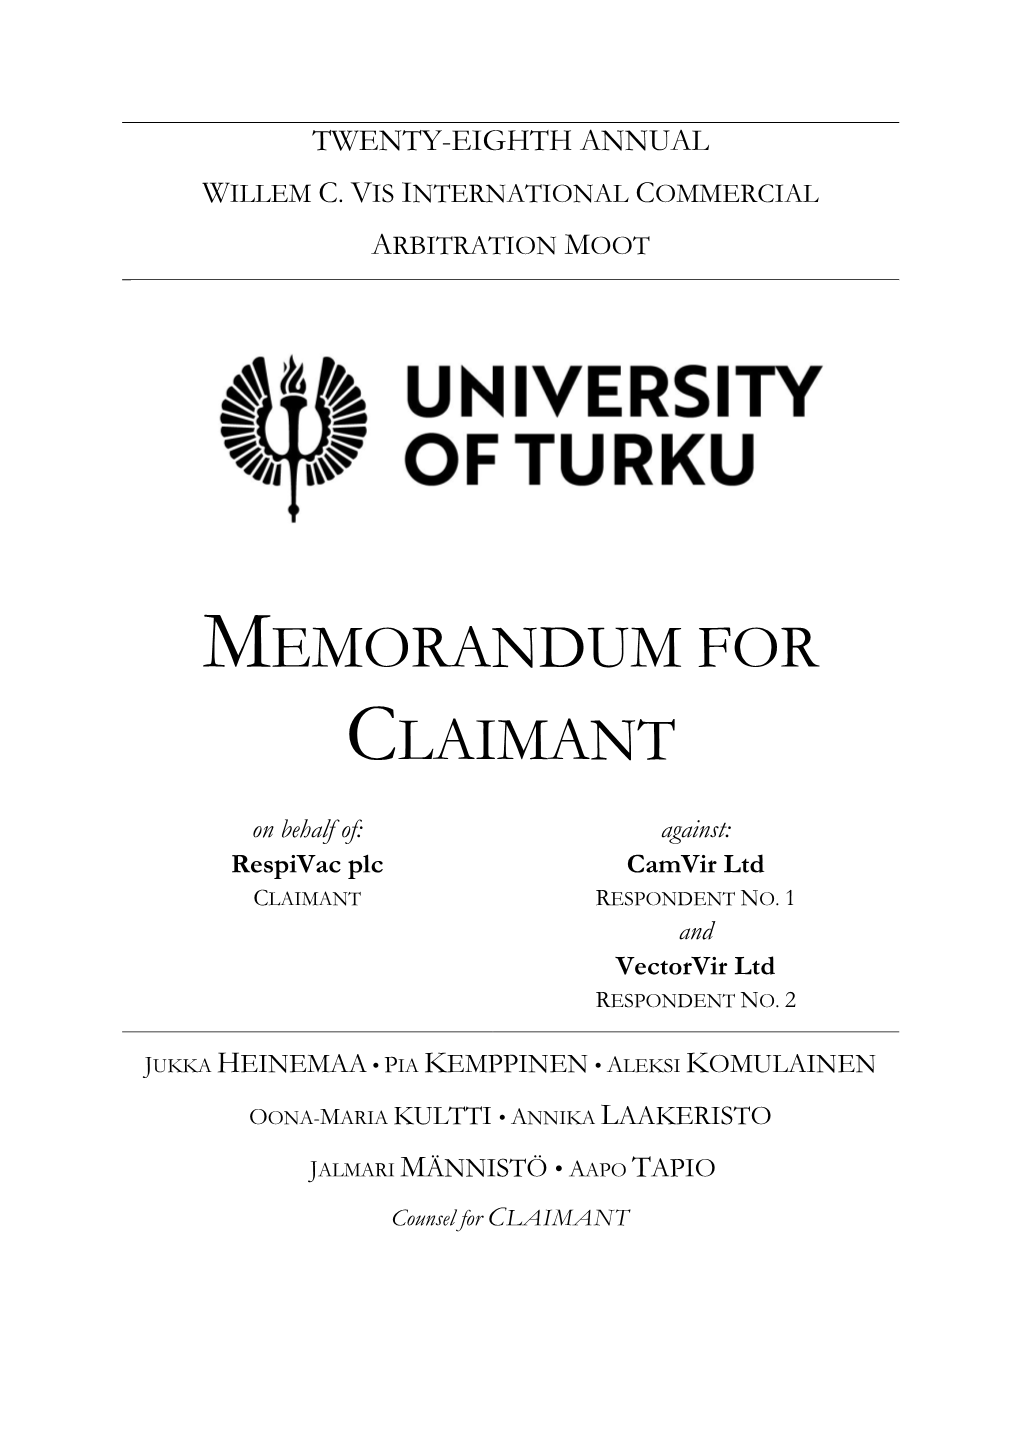 Memorandum for Claimant